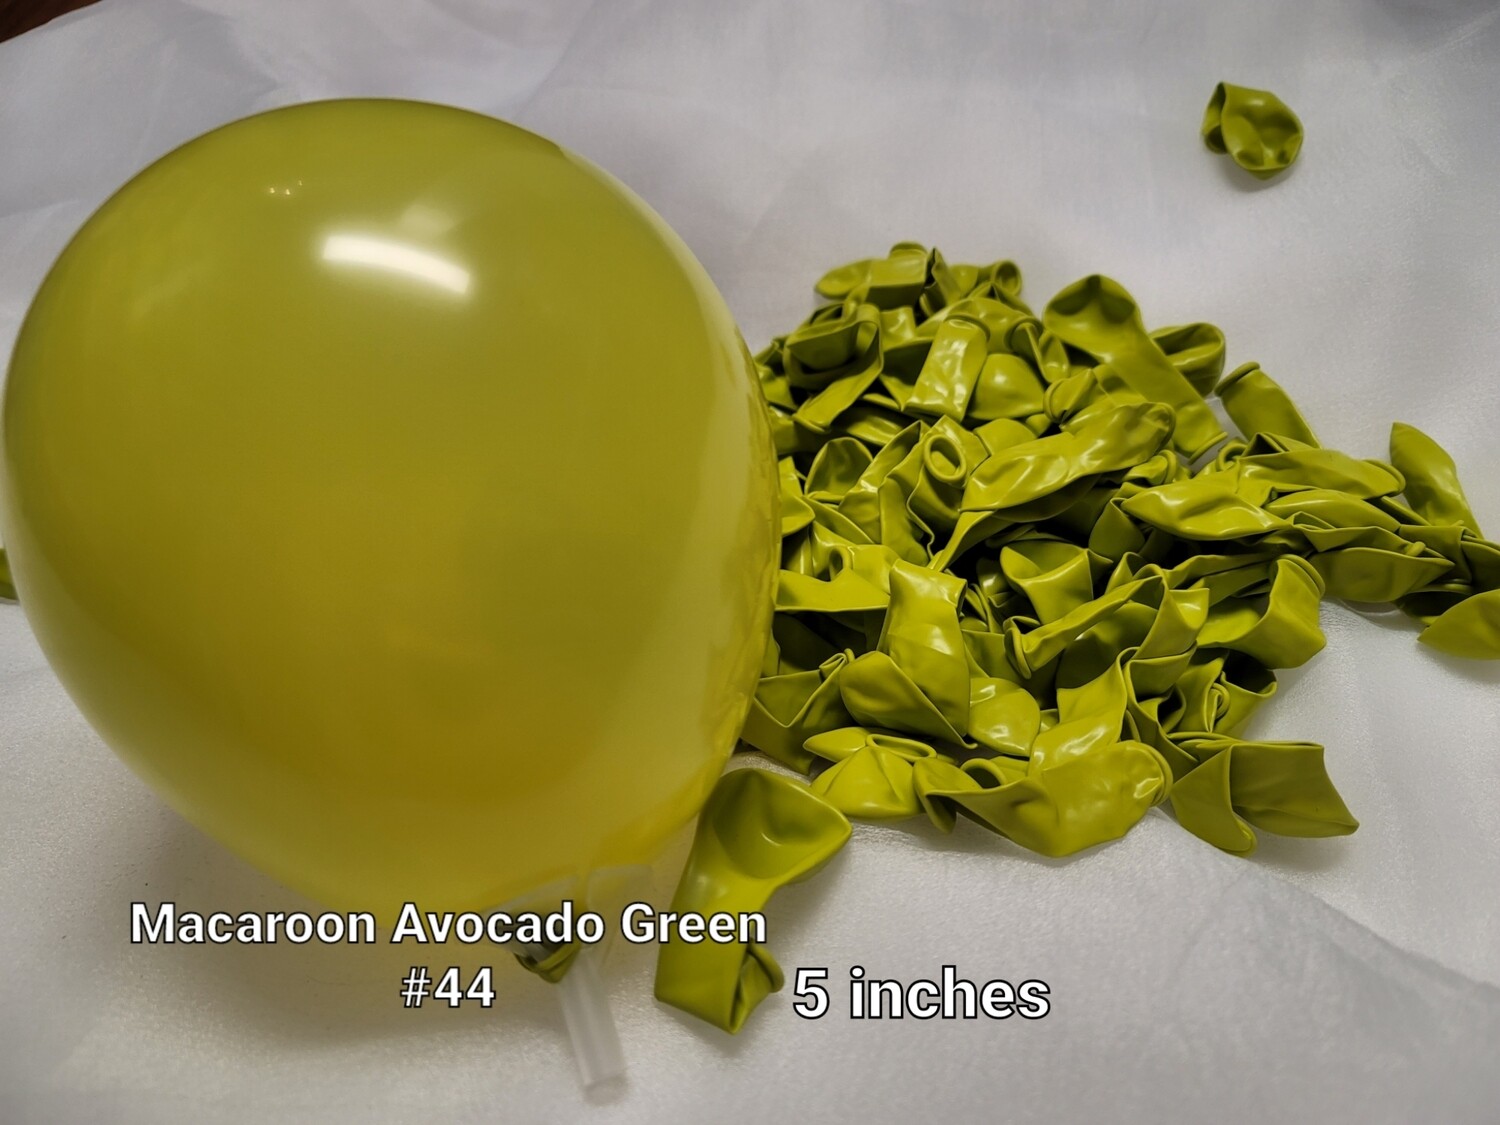 Macaroon Avocado Green balloon